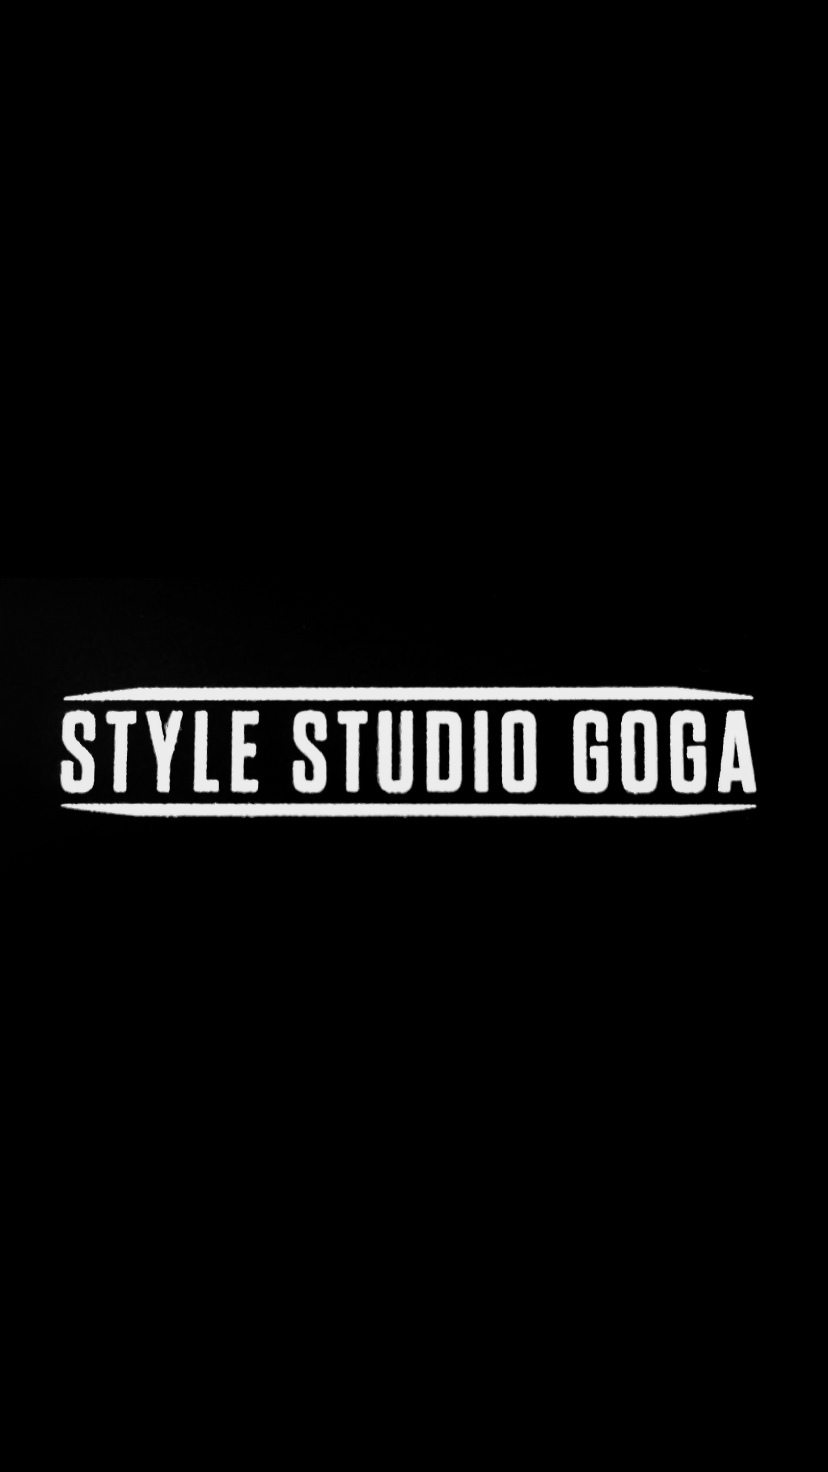 Style Studio Goga image